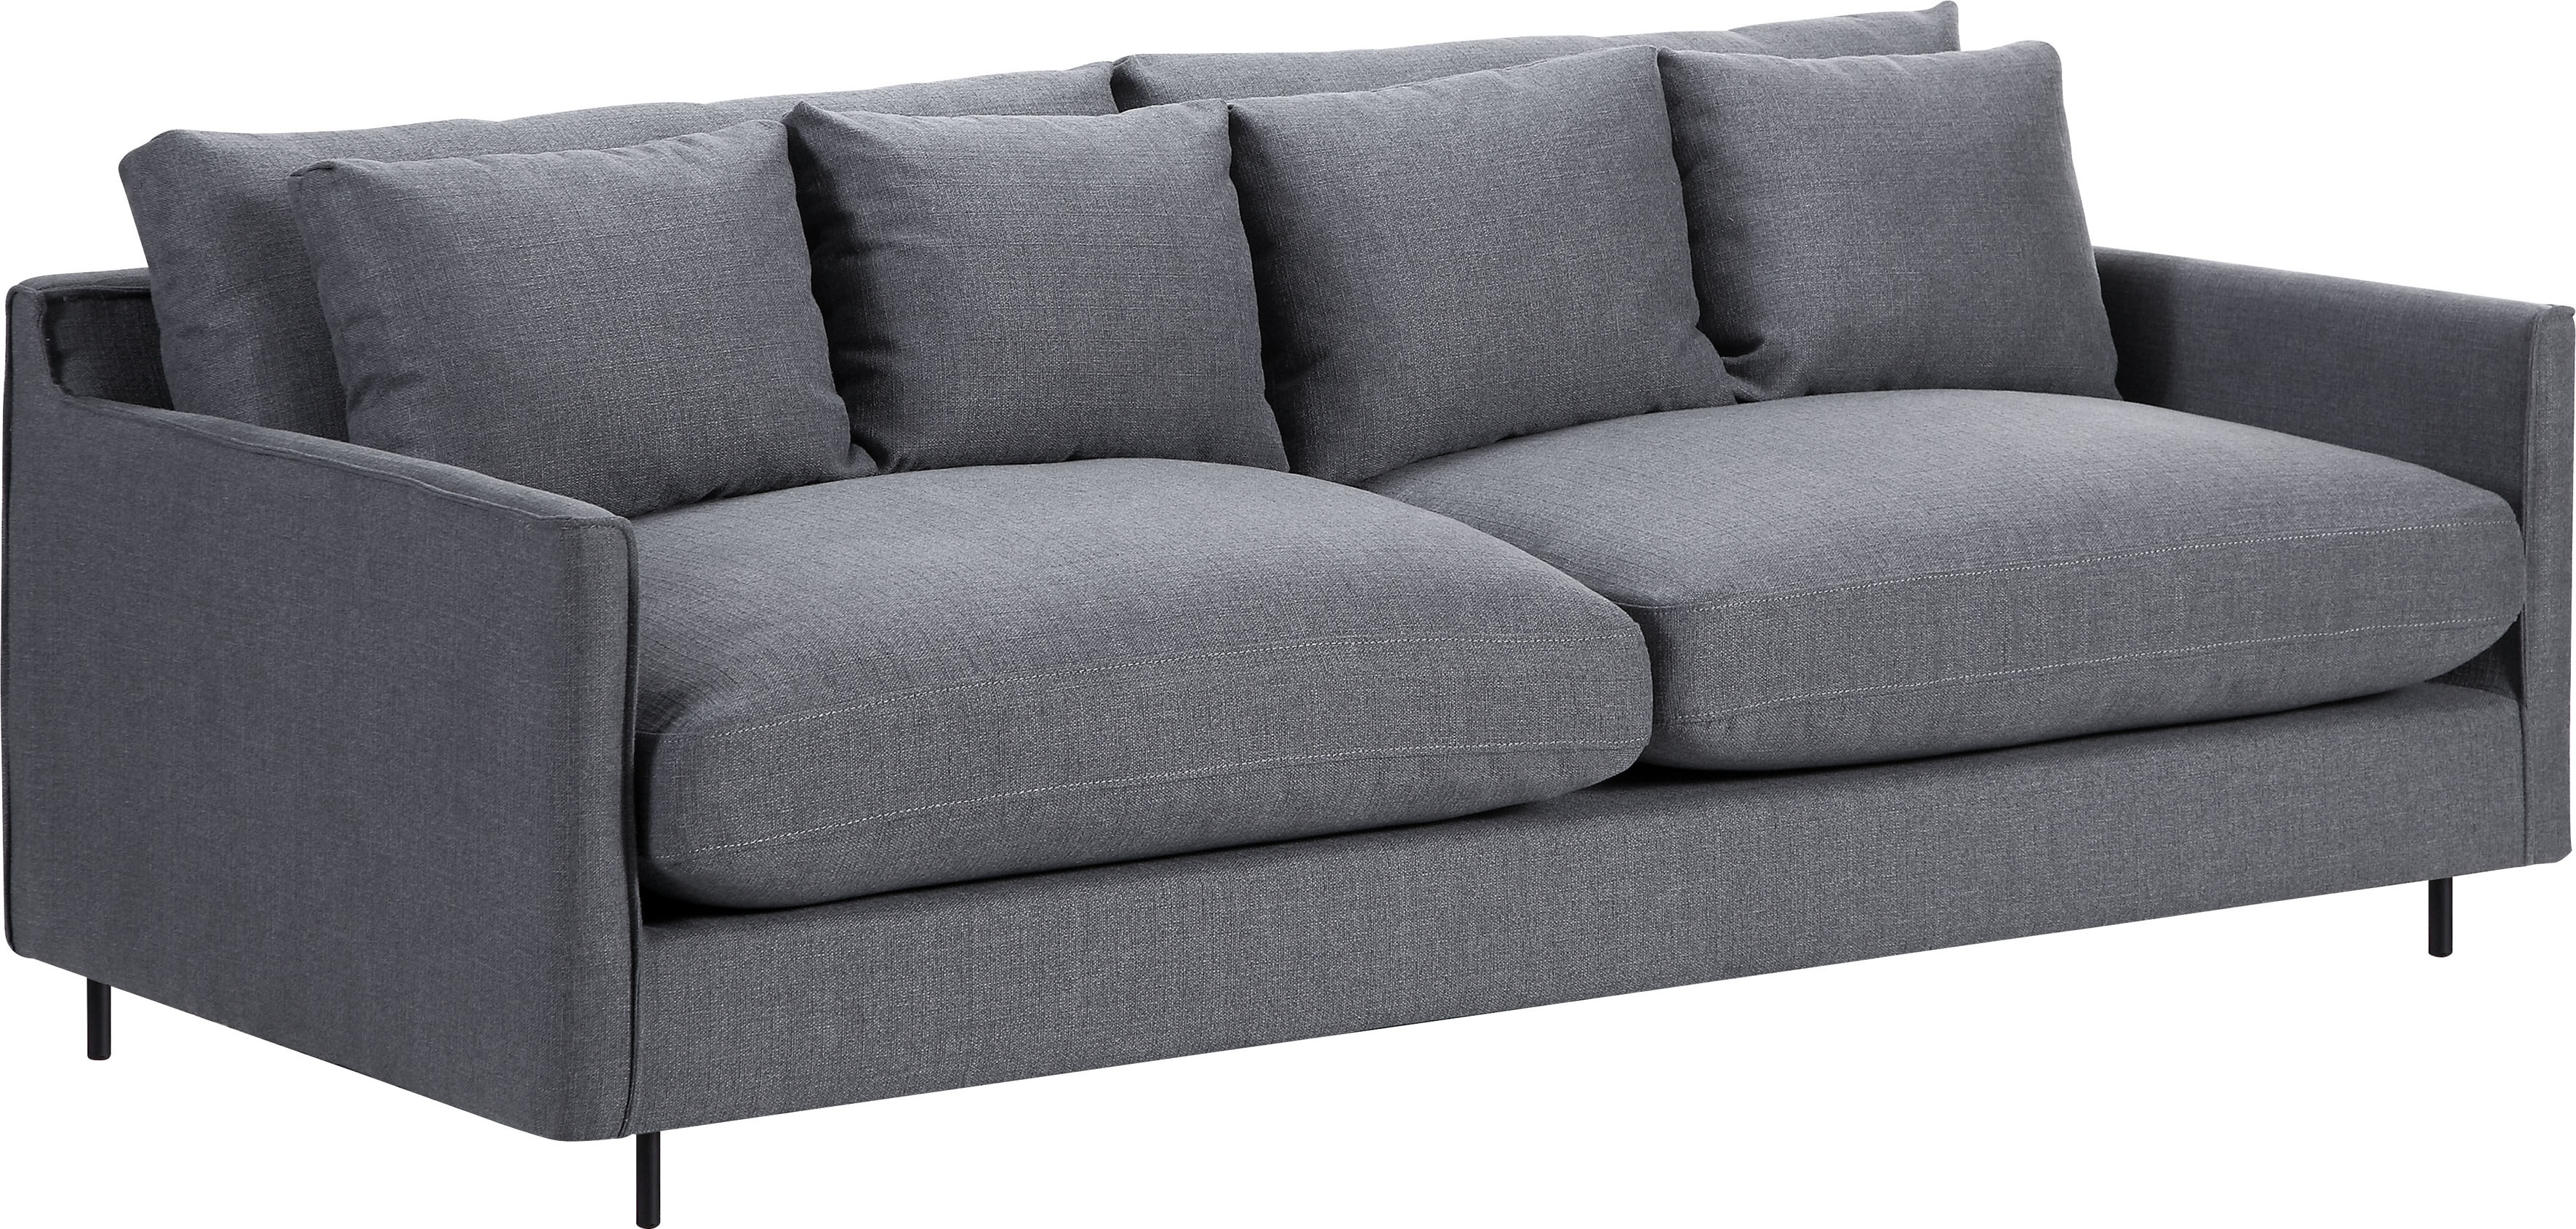 ATLANTIC home collection 3-Sitzer, Sofa, skandinvisch im Design, extra weich, Füllung mit Federn 2